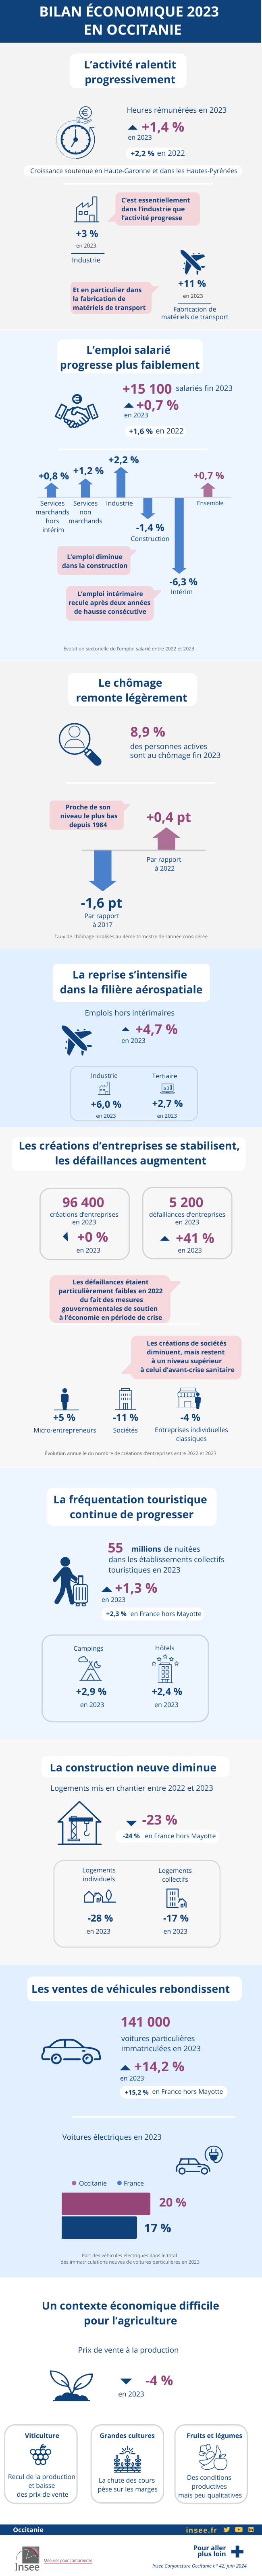 Bilan économique 2023 Occitanie